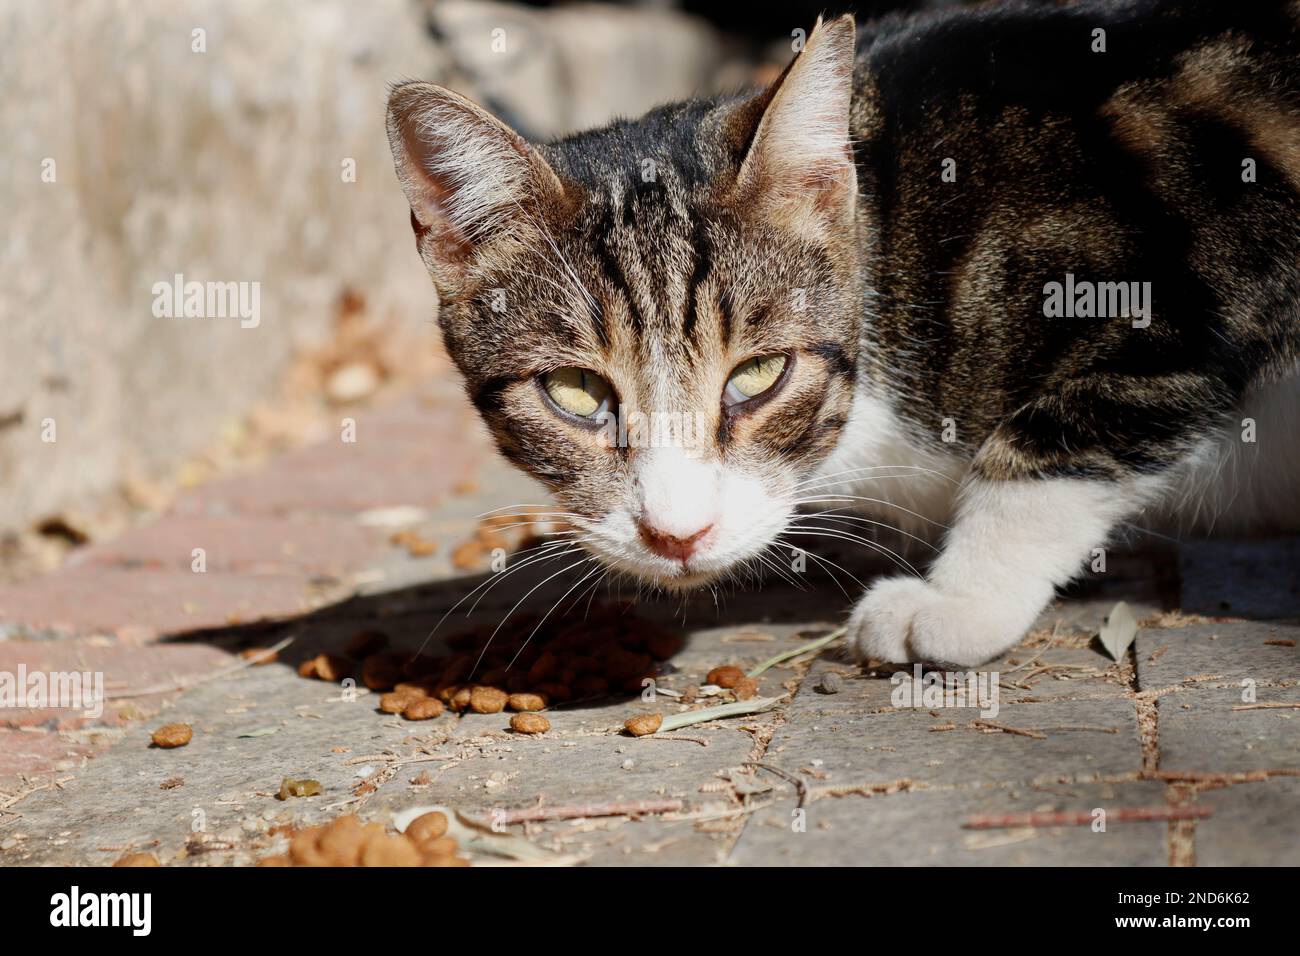 Tabby stray cat eating dry cat food Stock Photo